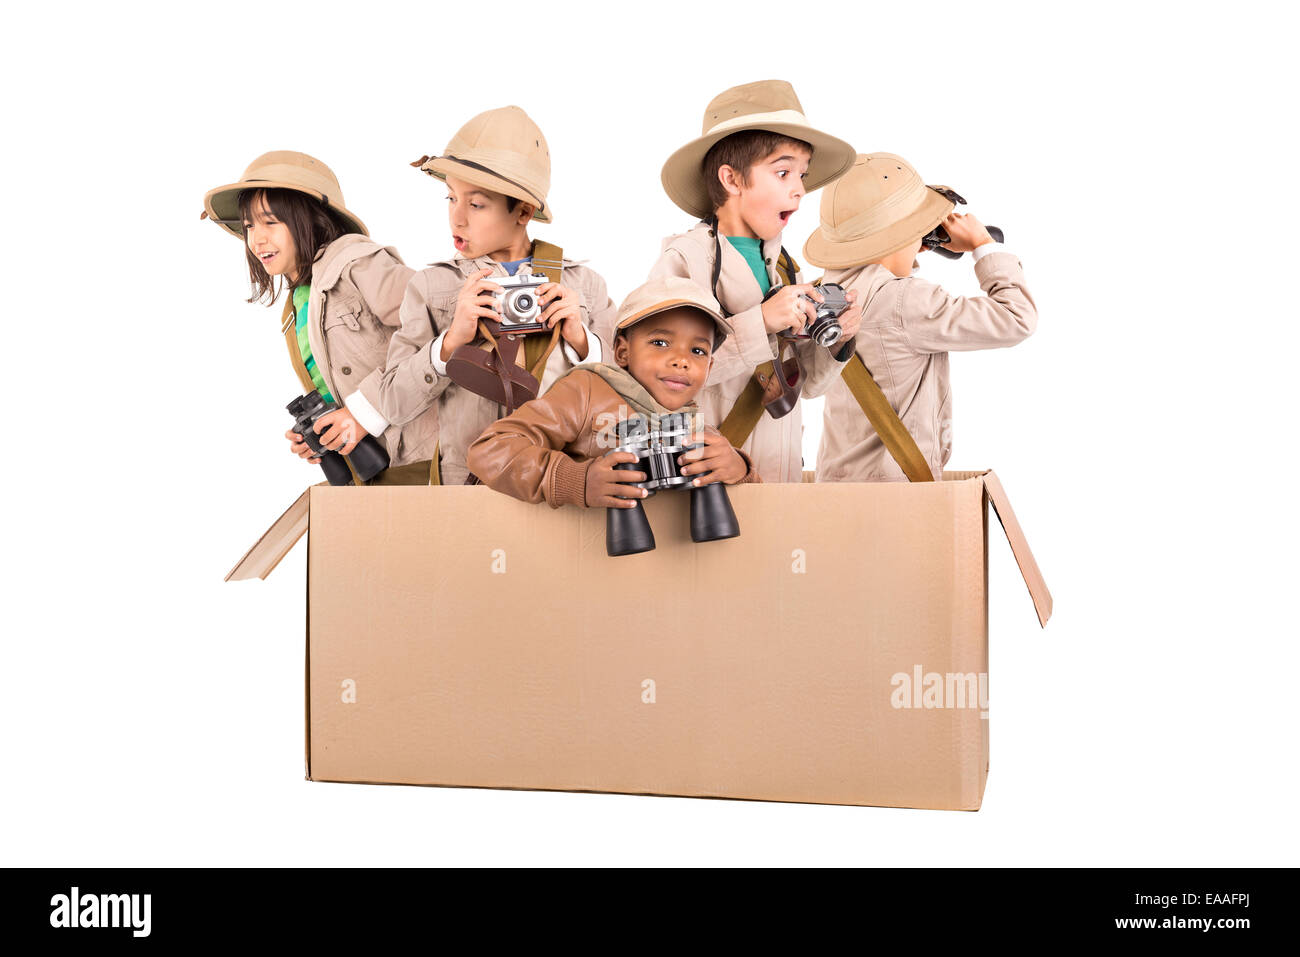 Groupe d'enfants jouant dans une boîte de carton safari Banque D'Images